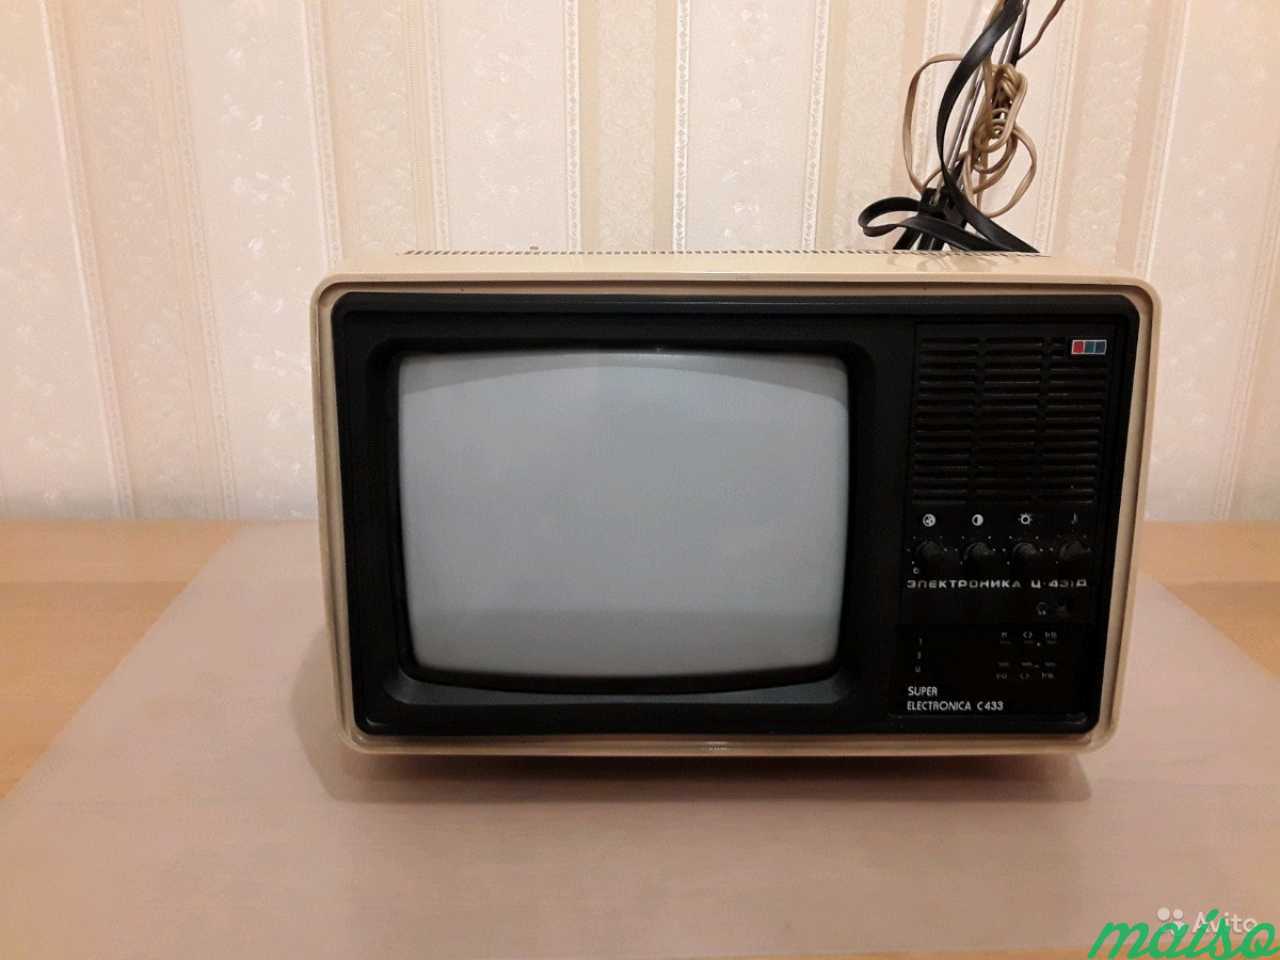 Телевизор цветной переносной Электроника Ц-431 Д 1 в Санкт-Петербурге. Фото 3